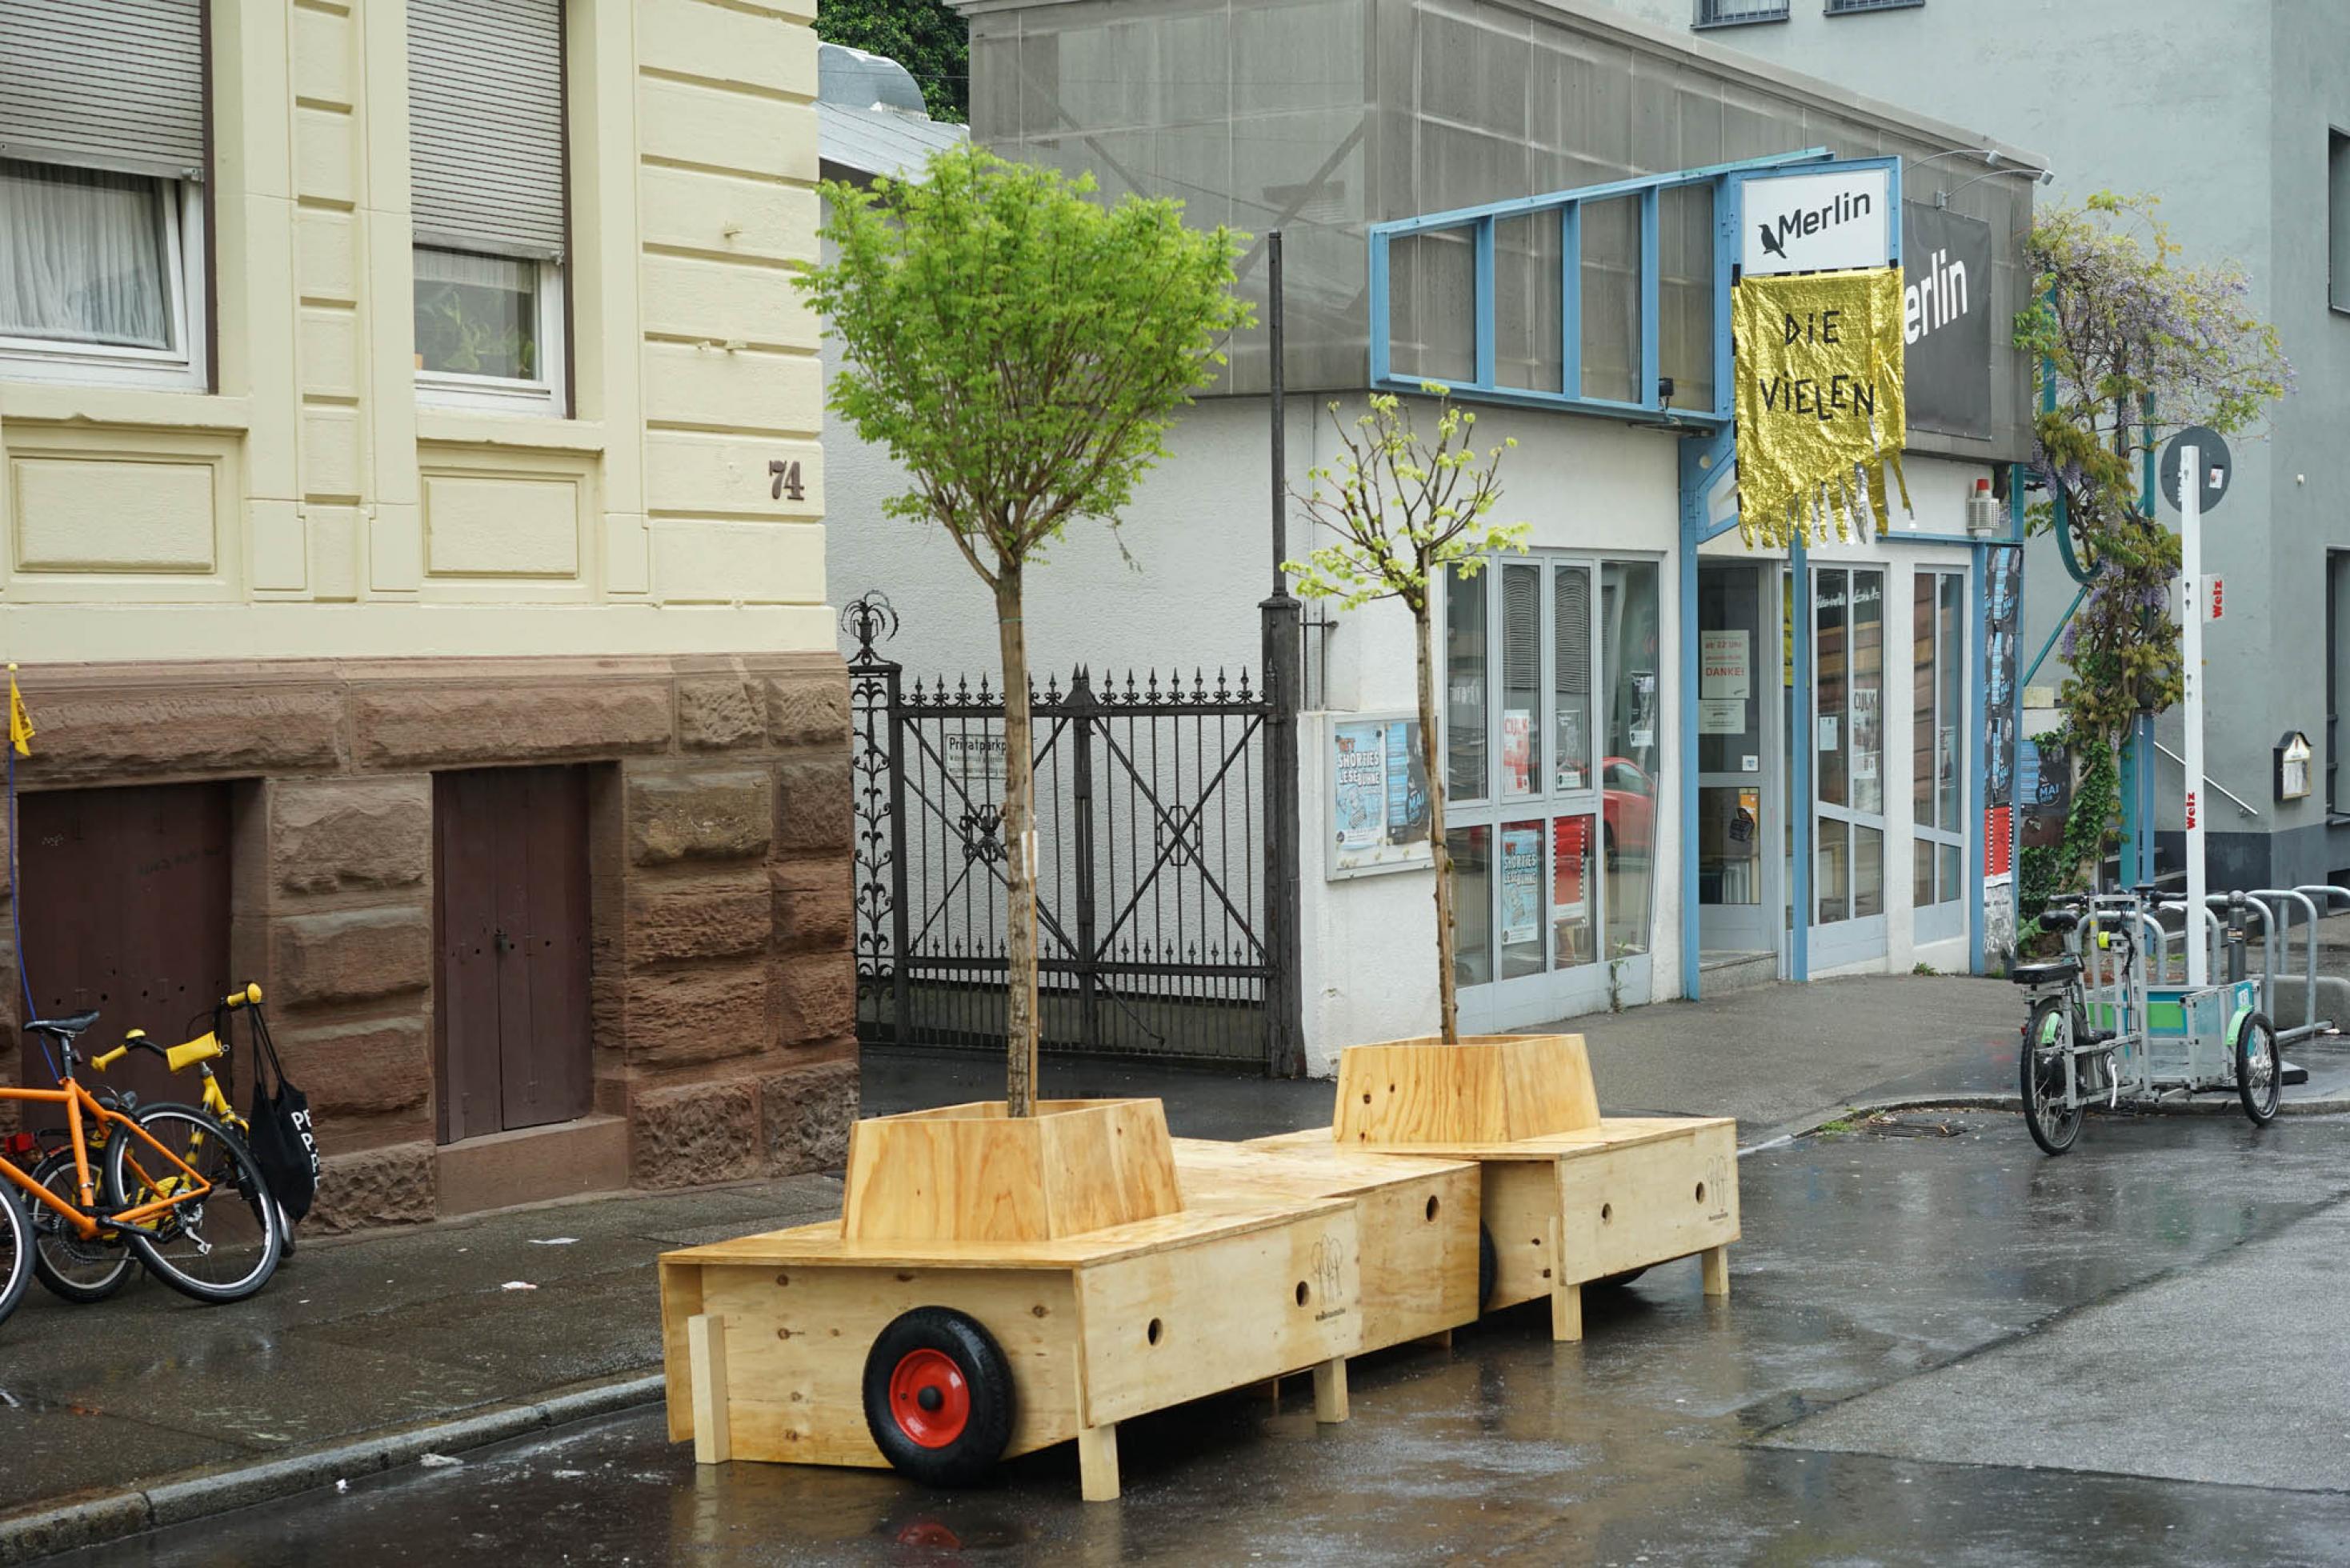 Junge Bäume mit einer Holzeinfassung, die eine Sitzgelegenheit darstellt, stehen am Straßenrand.